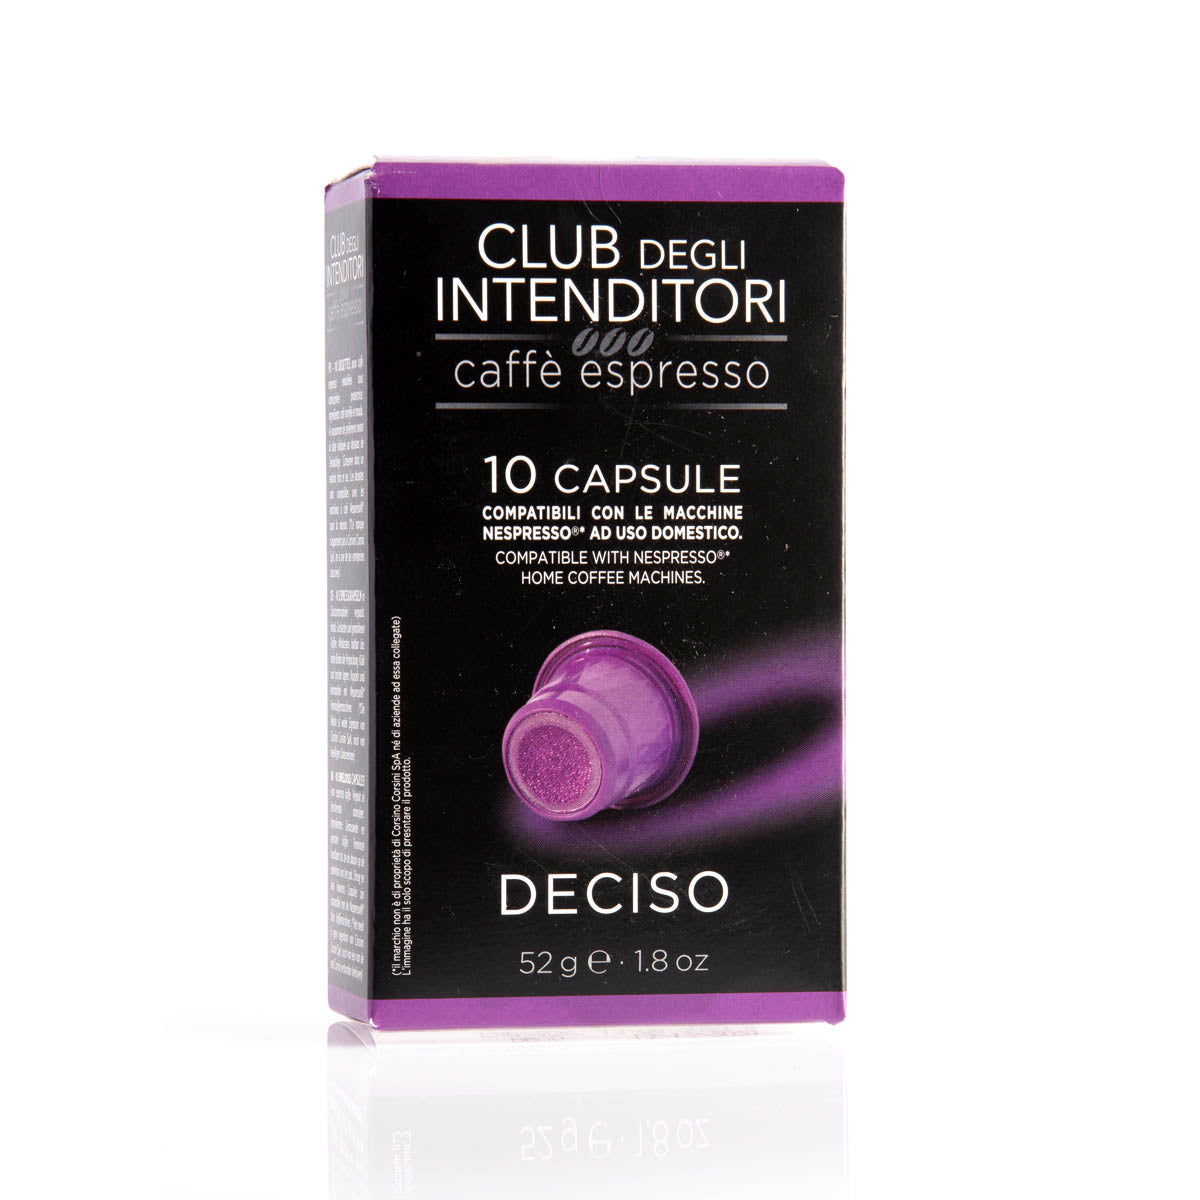 10 Nespresso® compatible espresso capsules | Club degli intenditori | Box of 6 packs